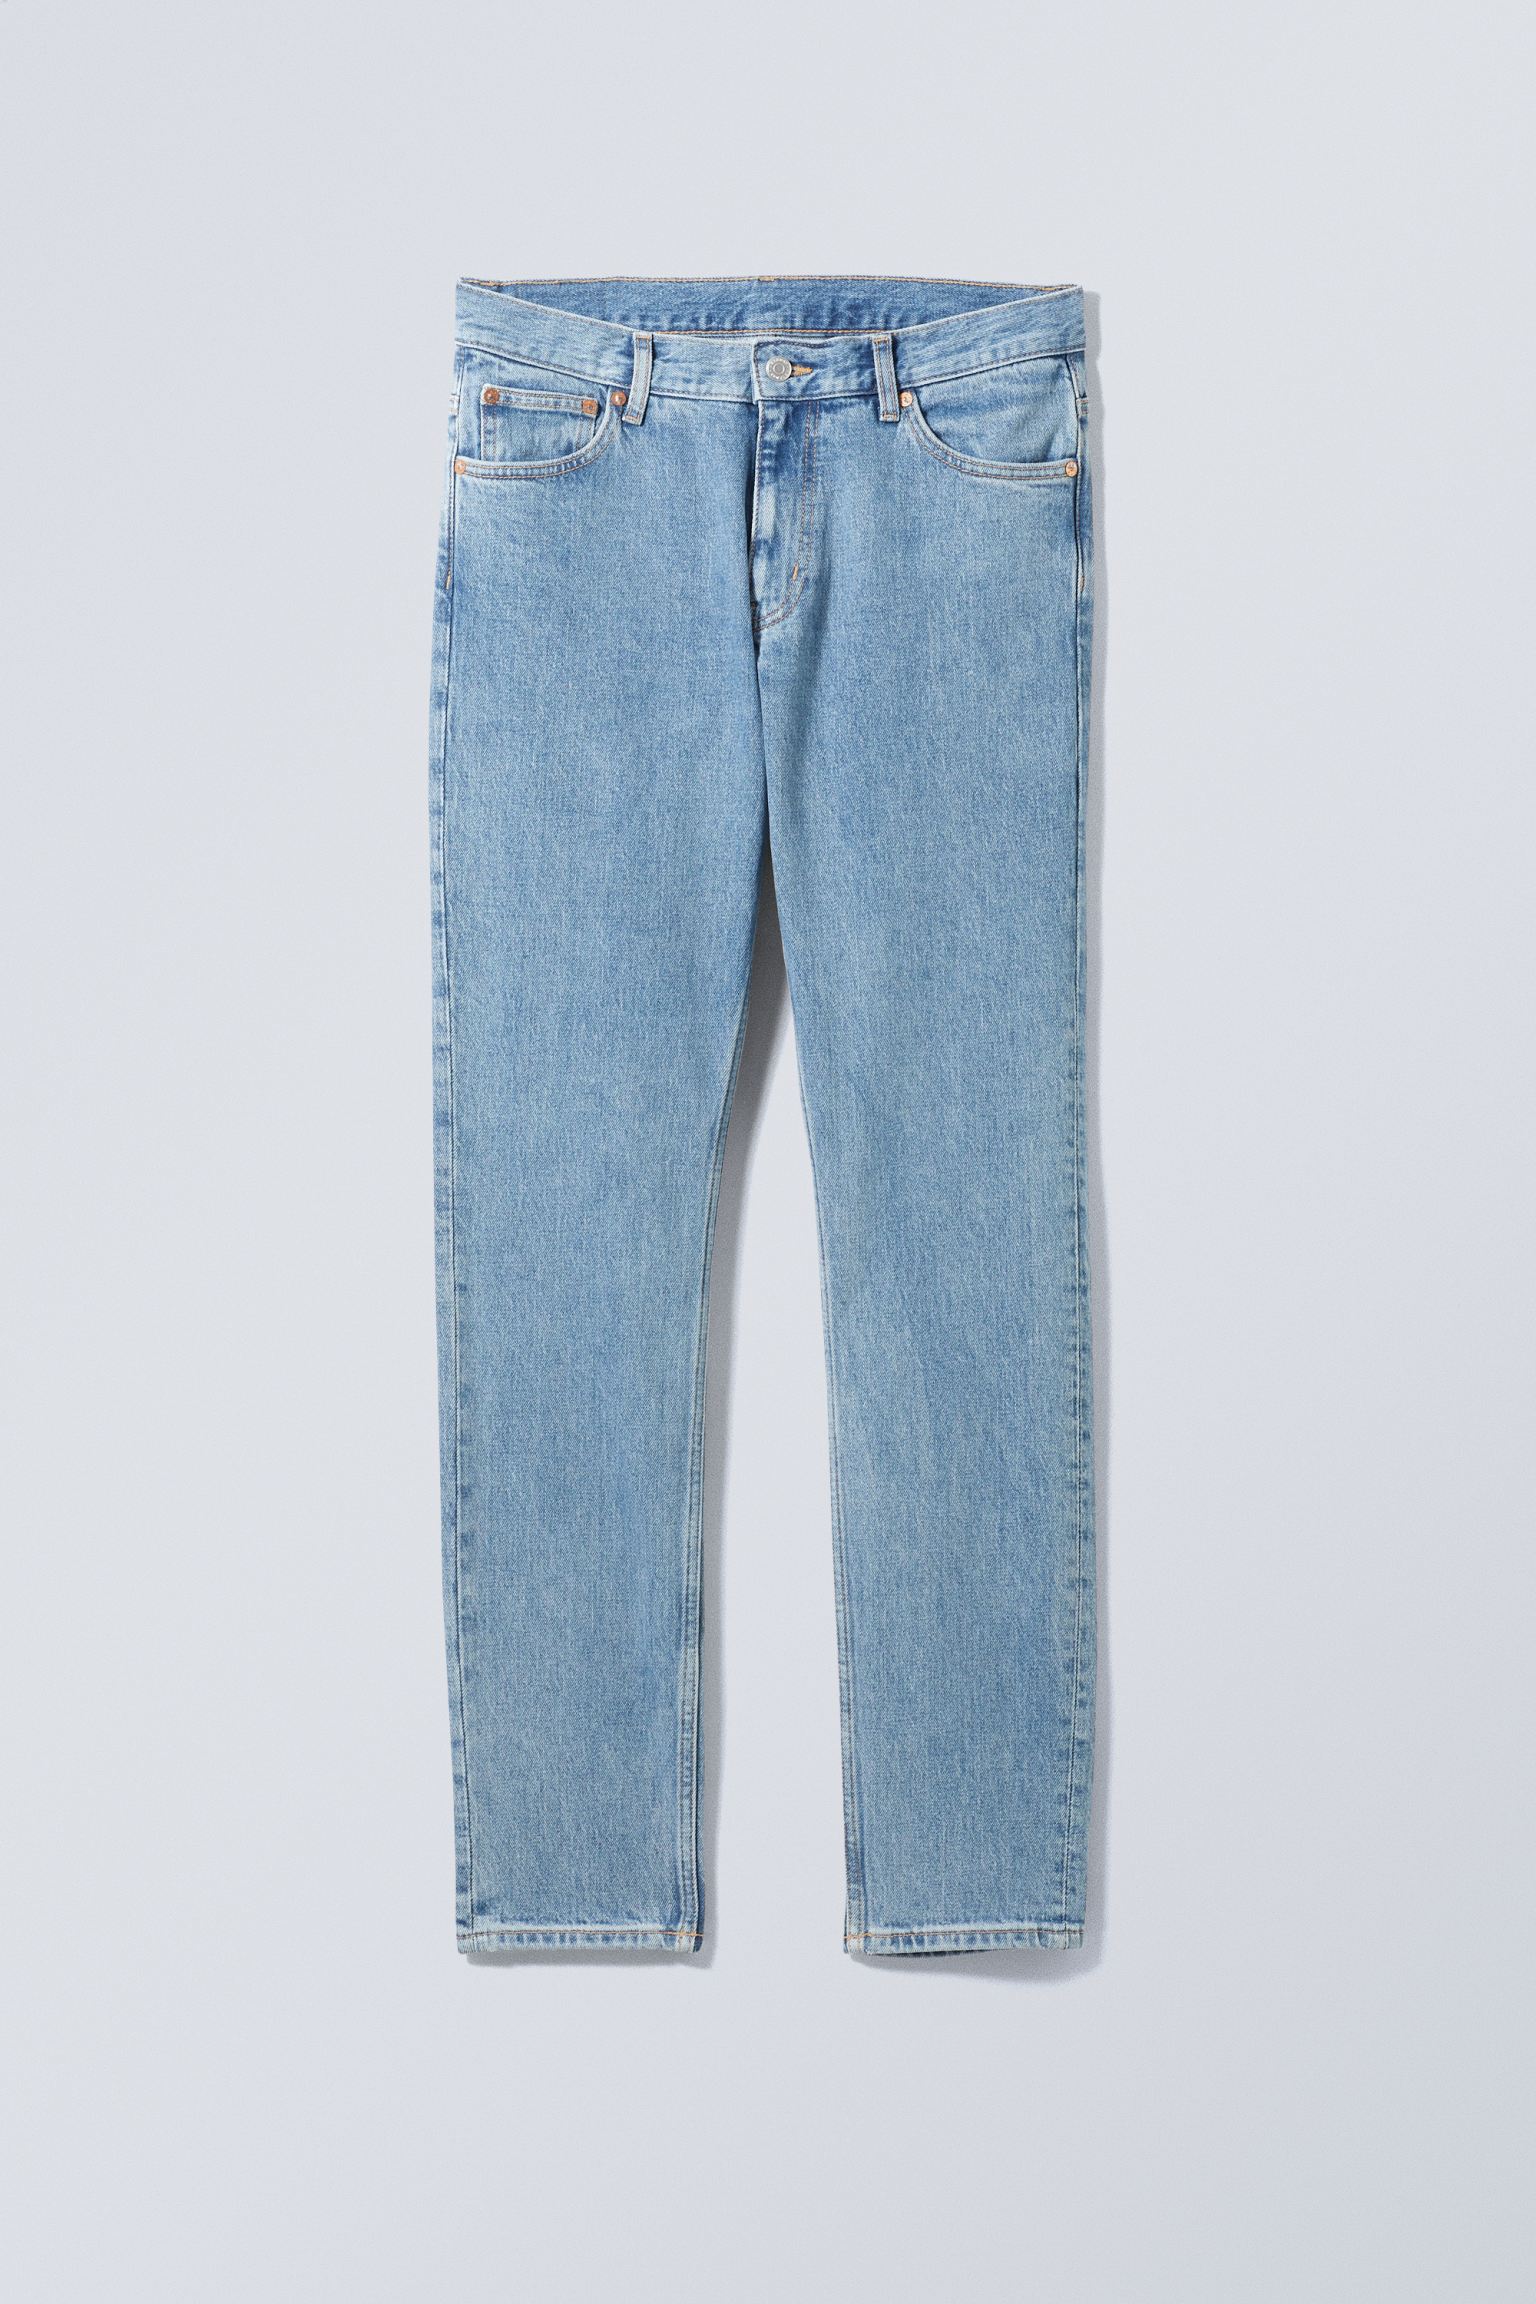 Weekday Schmale Jeans Sunday mit konisch zulaufendem Bein Tiefblau, Skinny in Größe 32/32. Farbe: Cerulean blue von Weekday